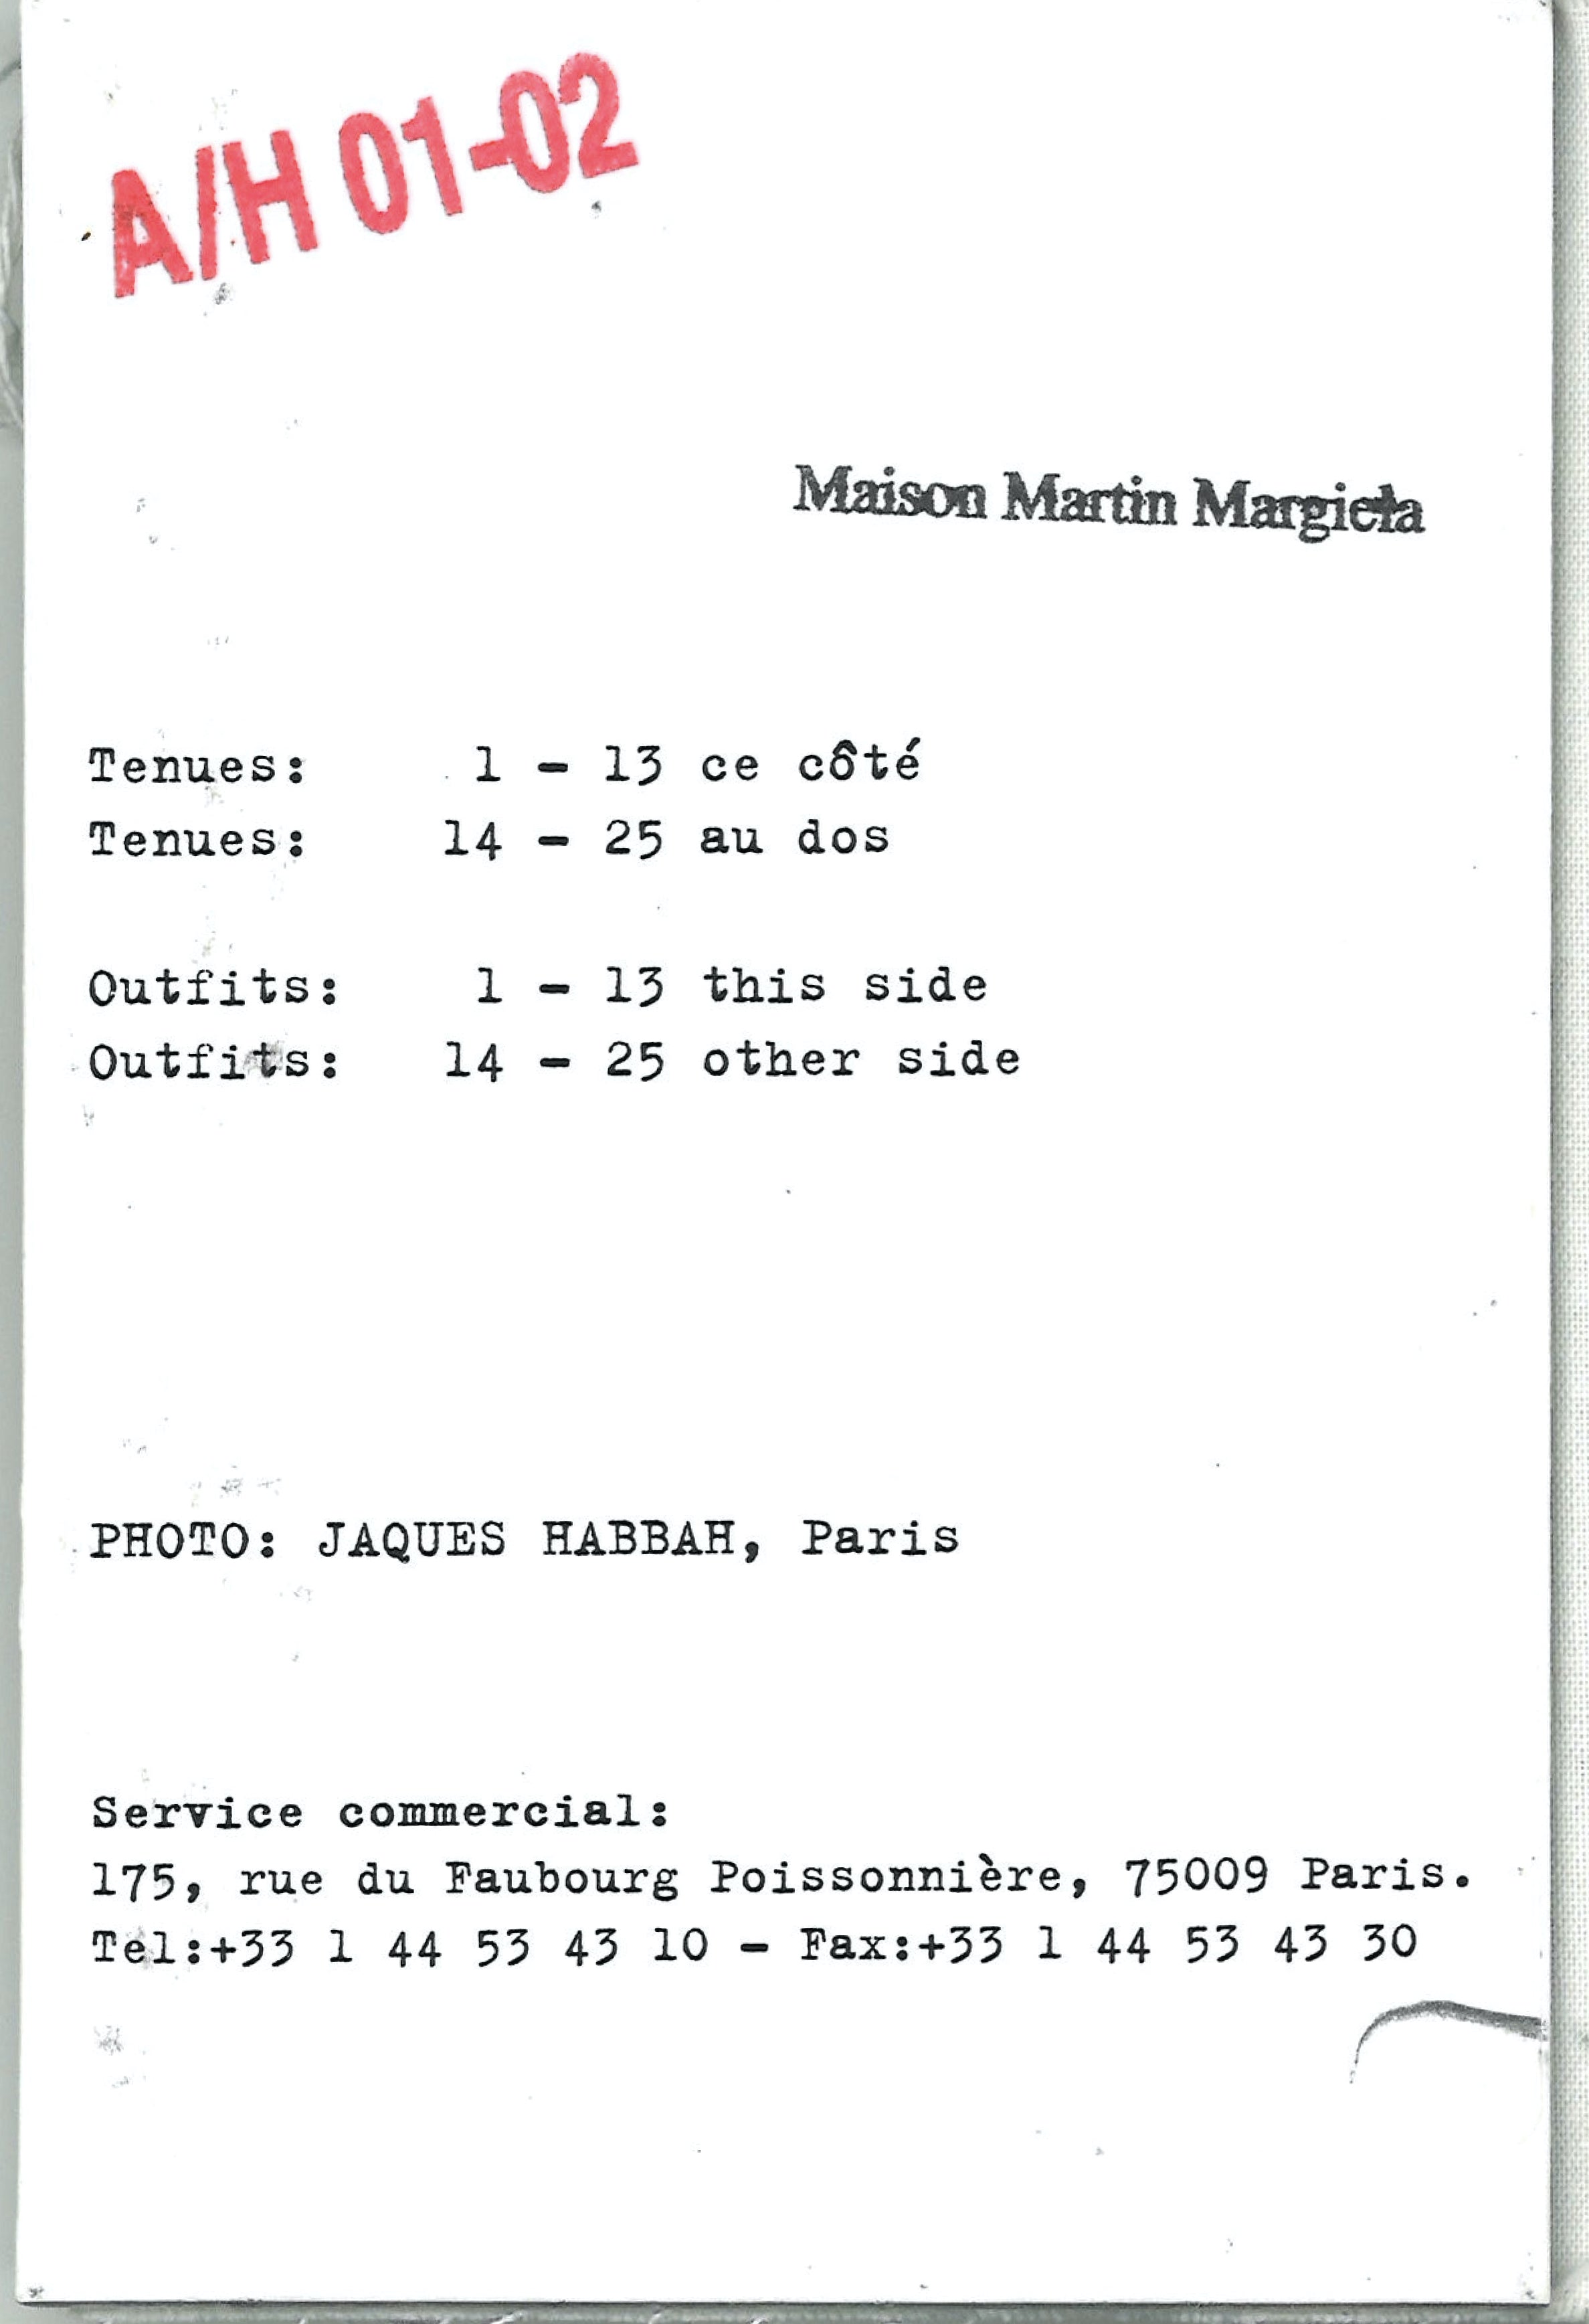 Maison Martin Margiela Lookbook
Womenswear Collection Autumn/Winter 2001-02